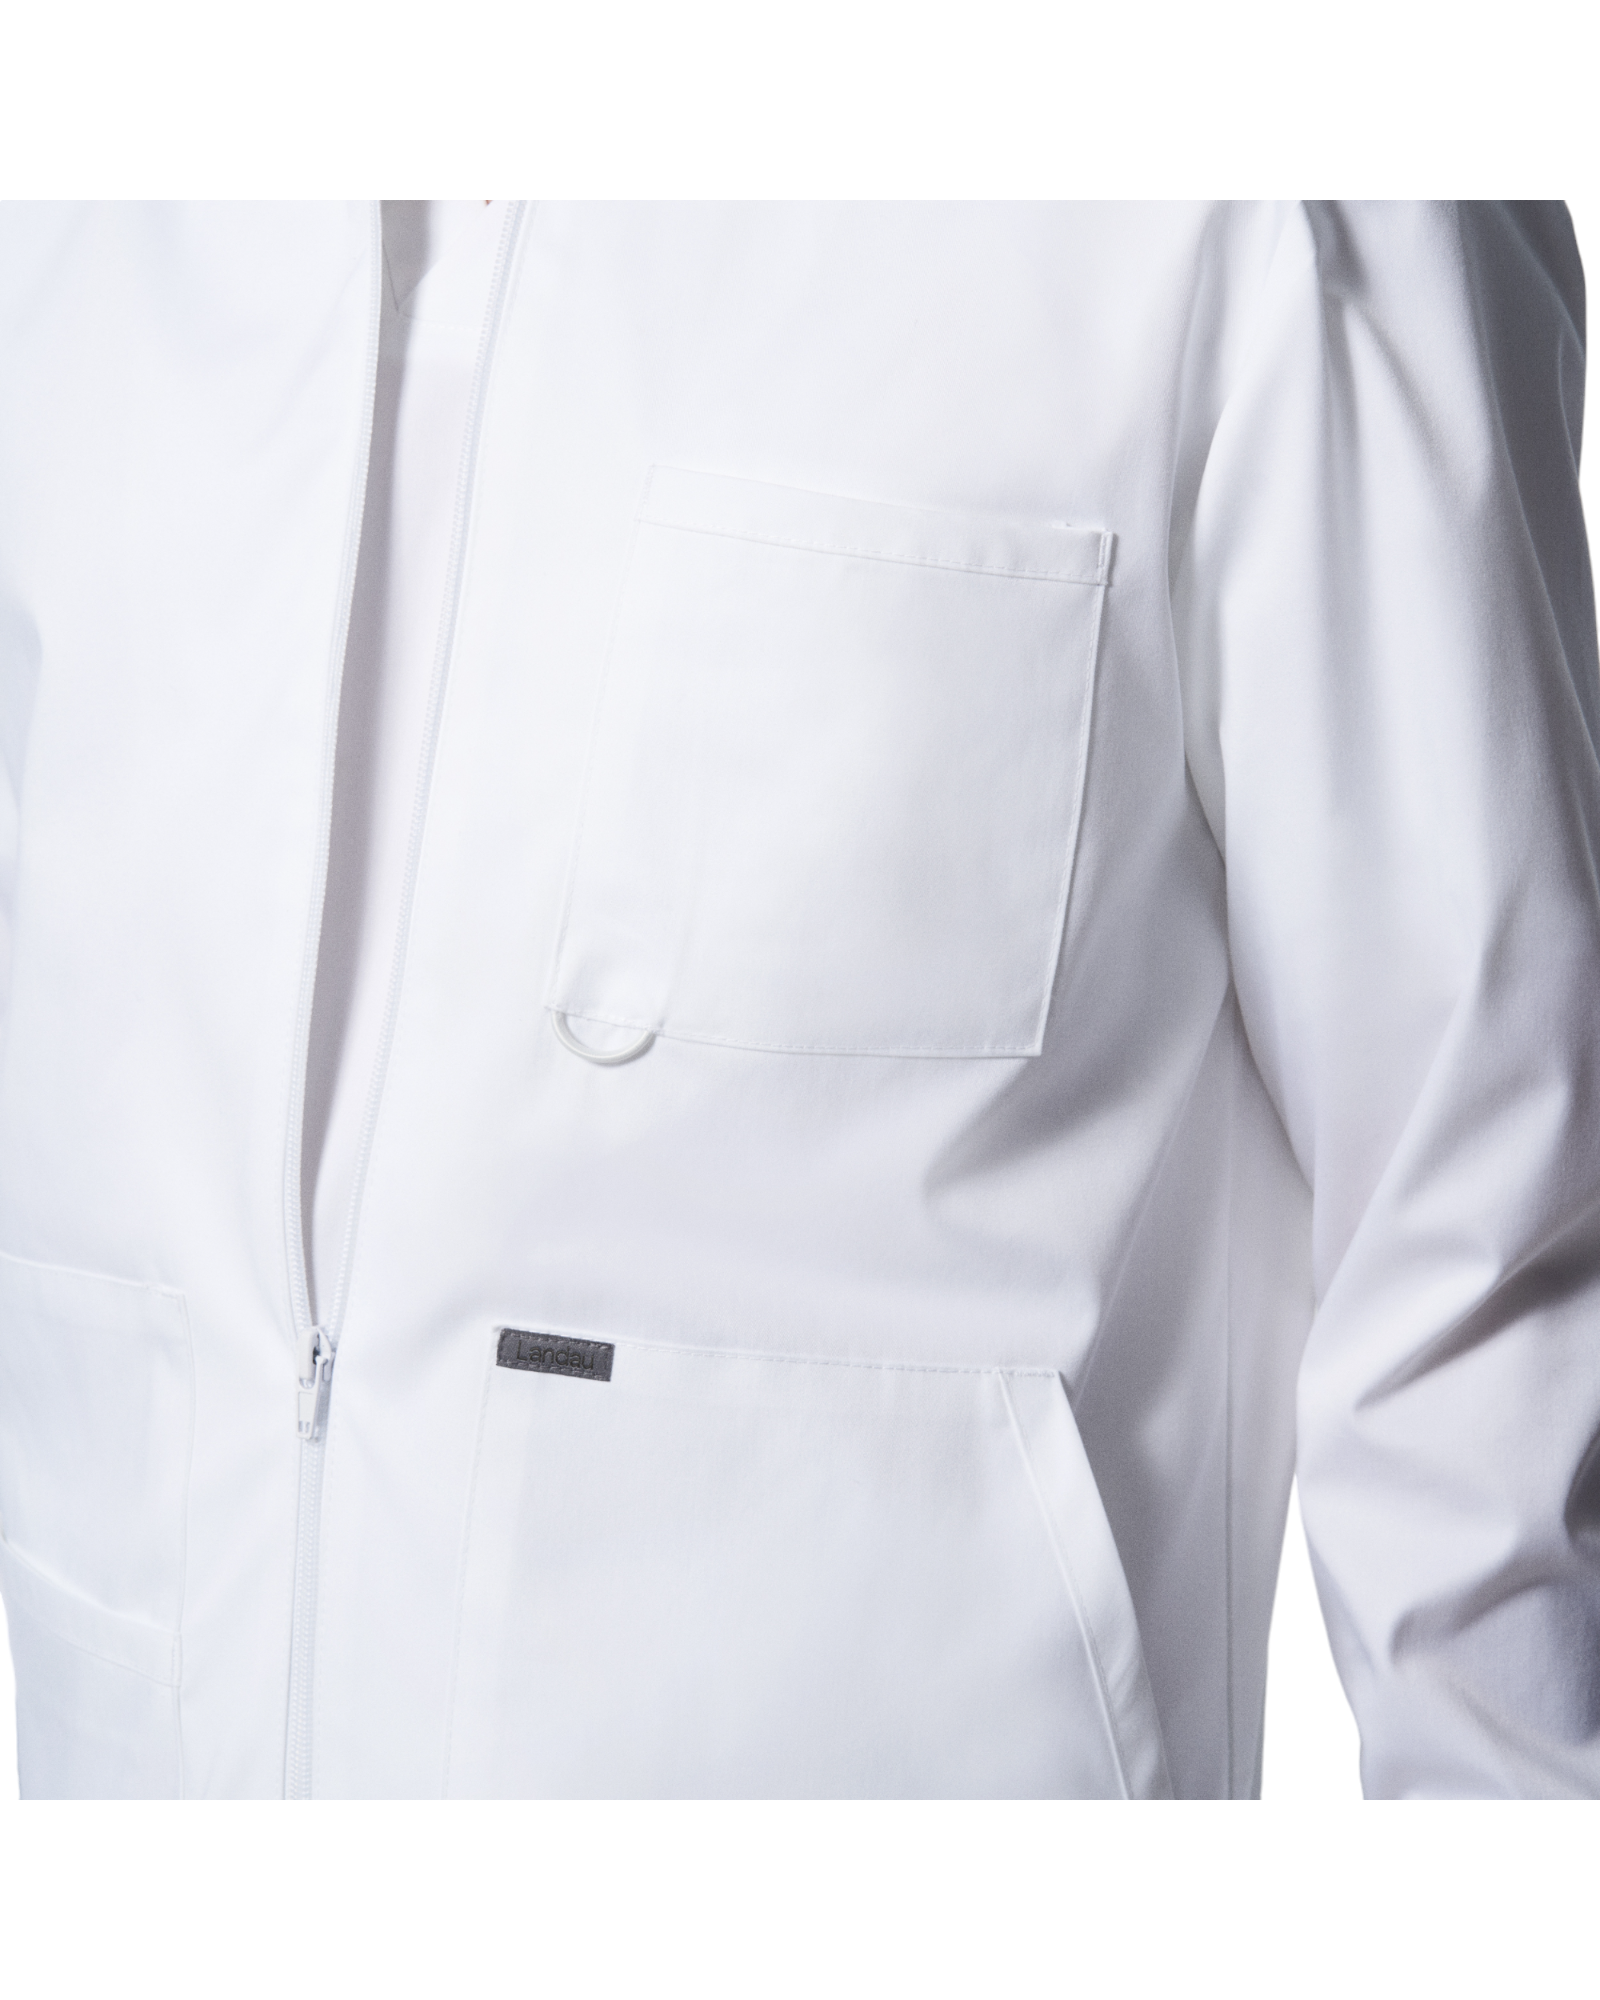 Vue de la poche poitrine de la veste de survêtement pour hommes Landau Proflex #LJ702 OS .